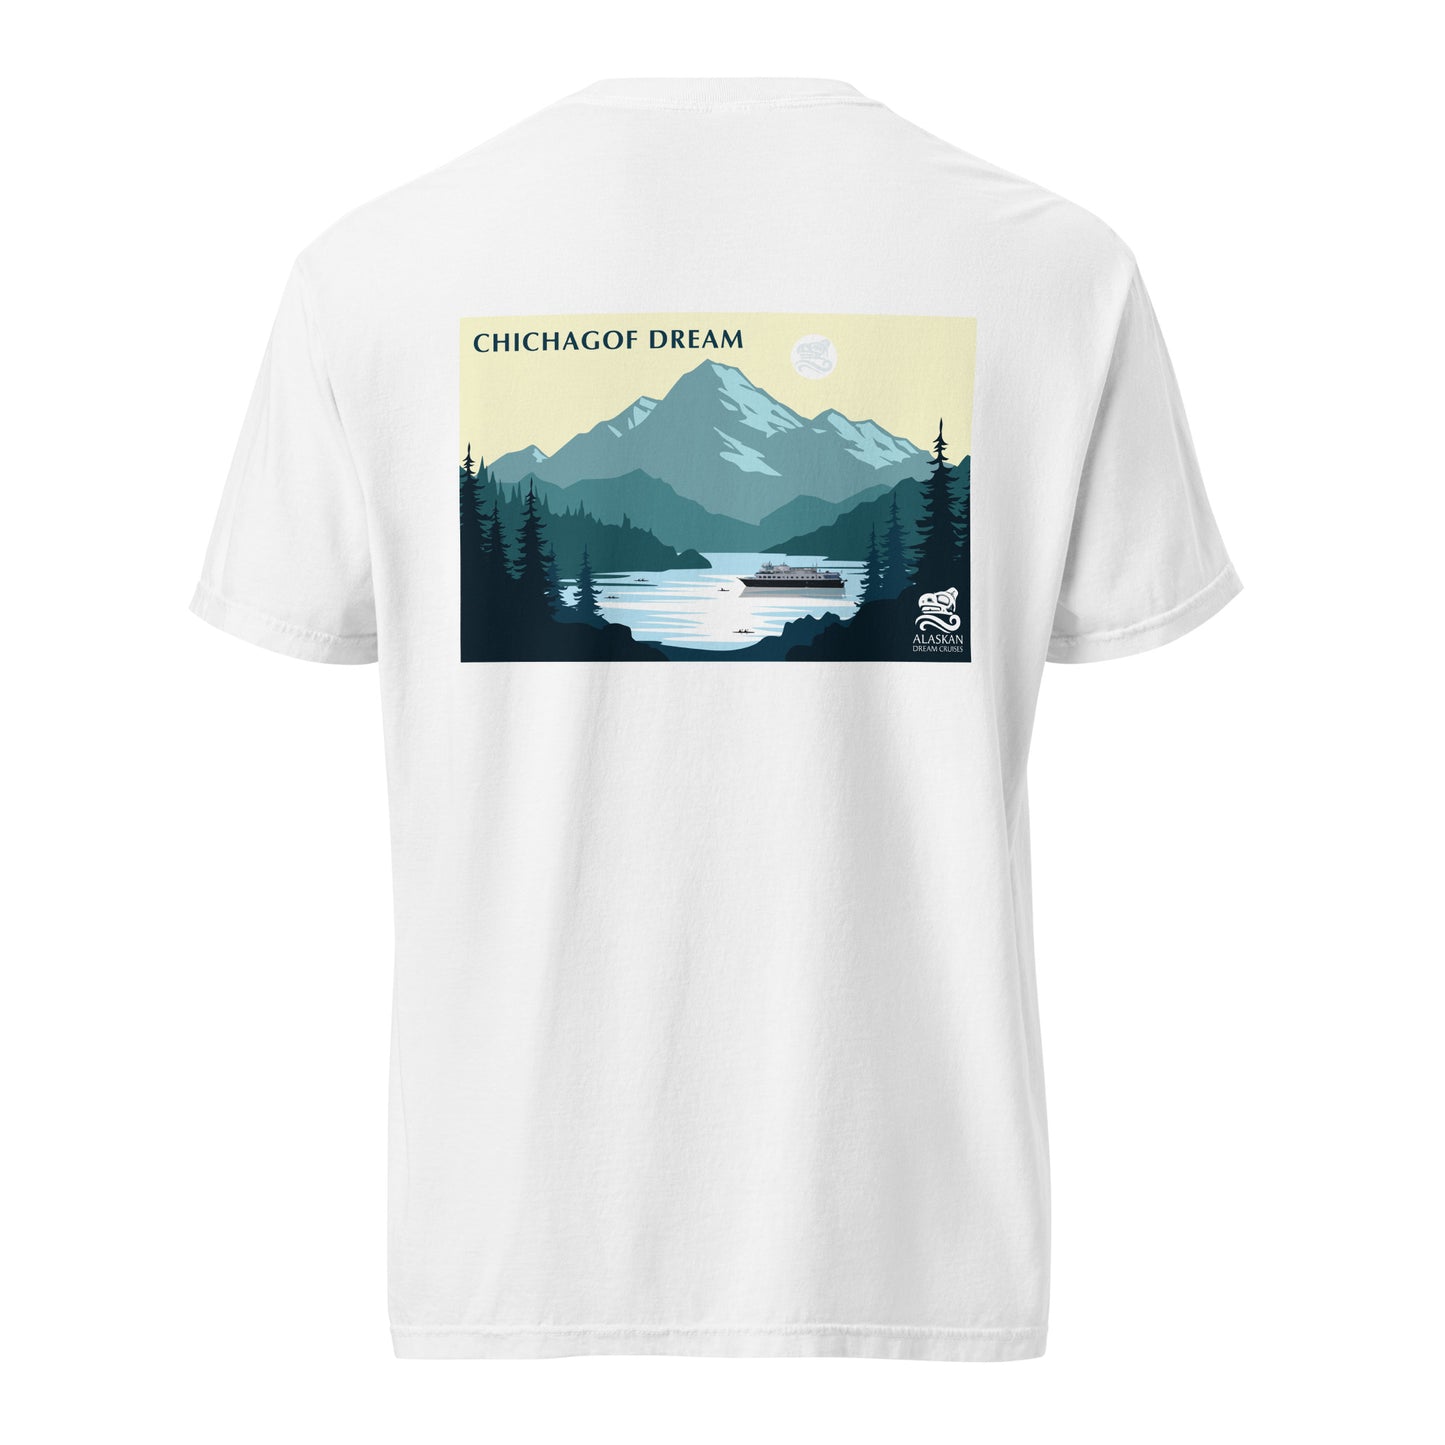 Chichagof Dream t-shirt